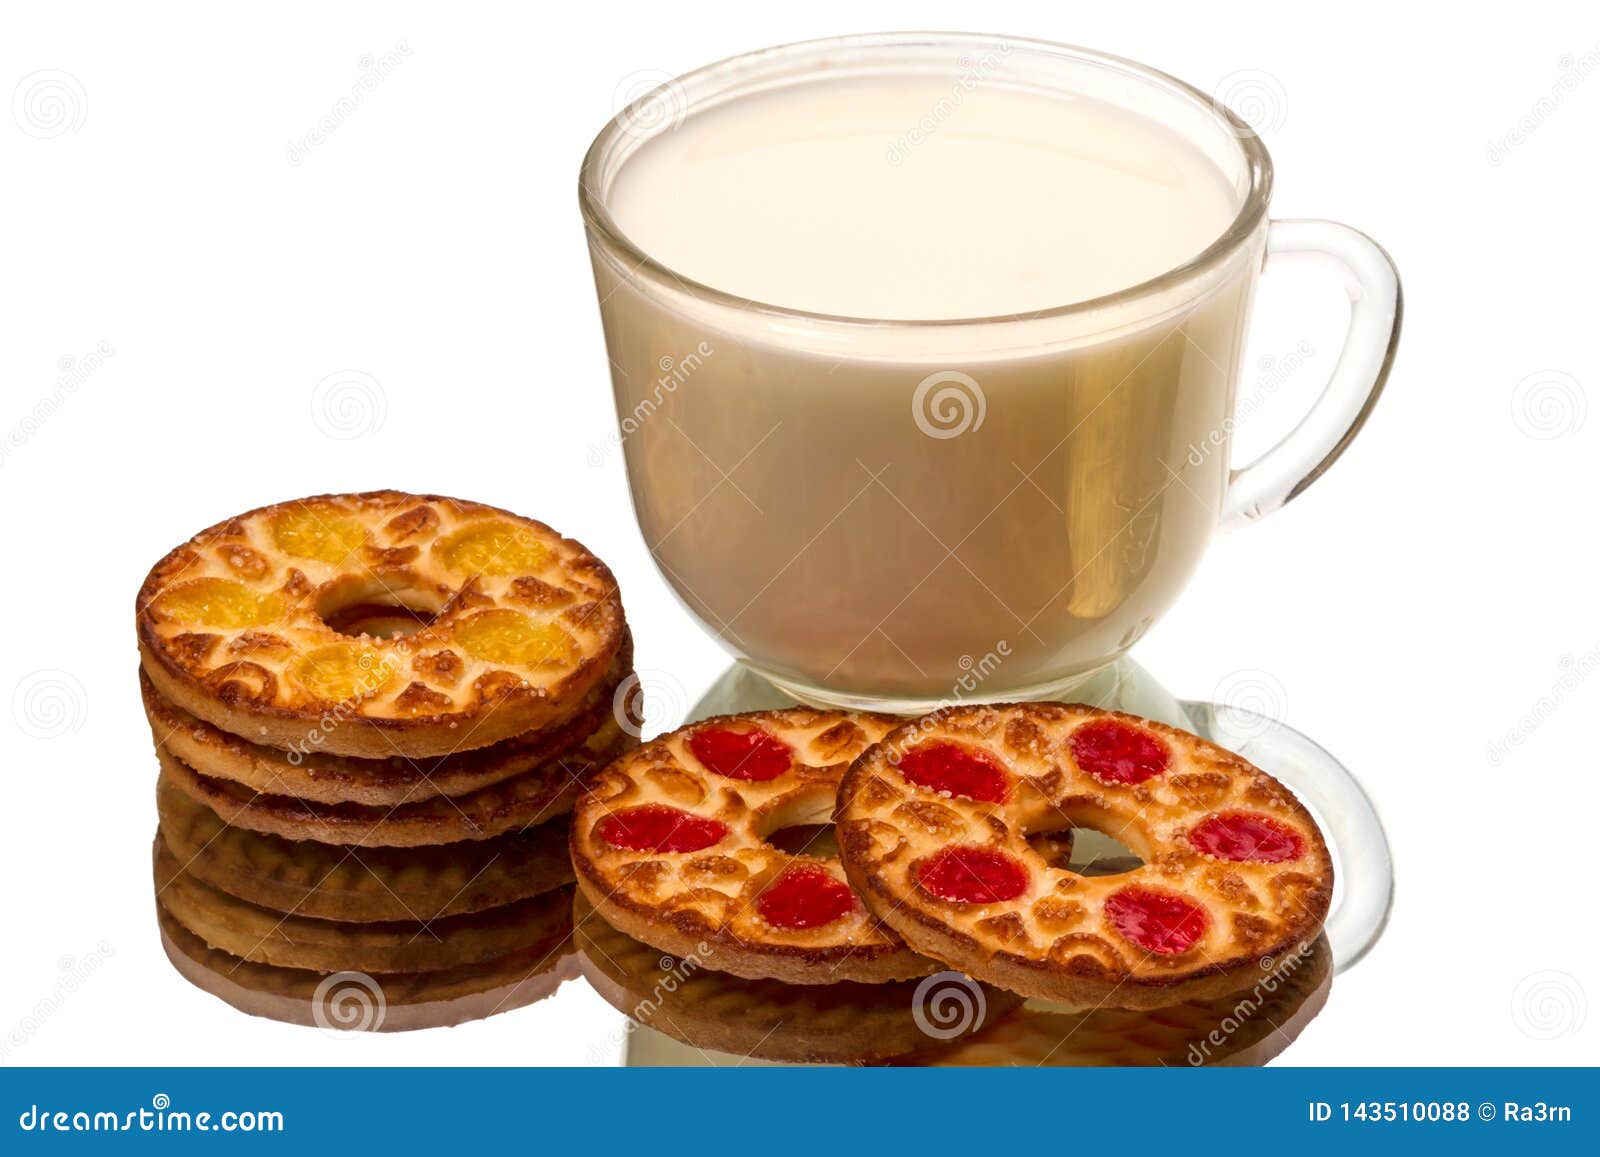 Cookies redondas e um copo do leite. Cookies redondas e um copo transparente do leite em um espelho isolado no fundo branco